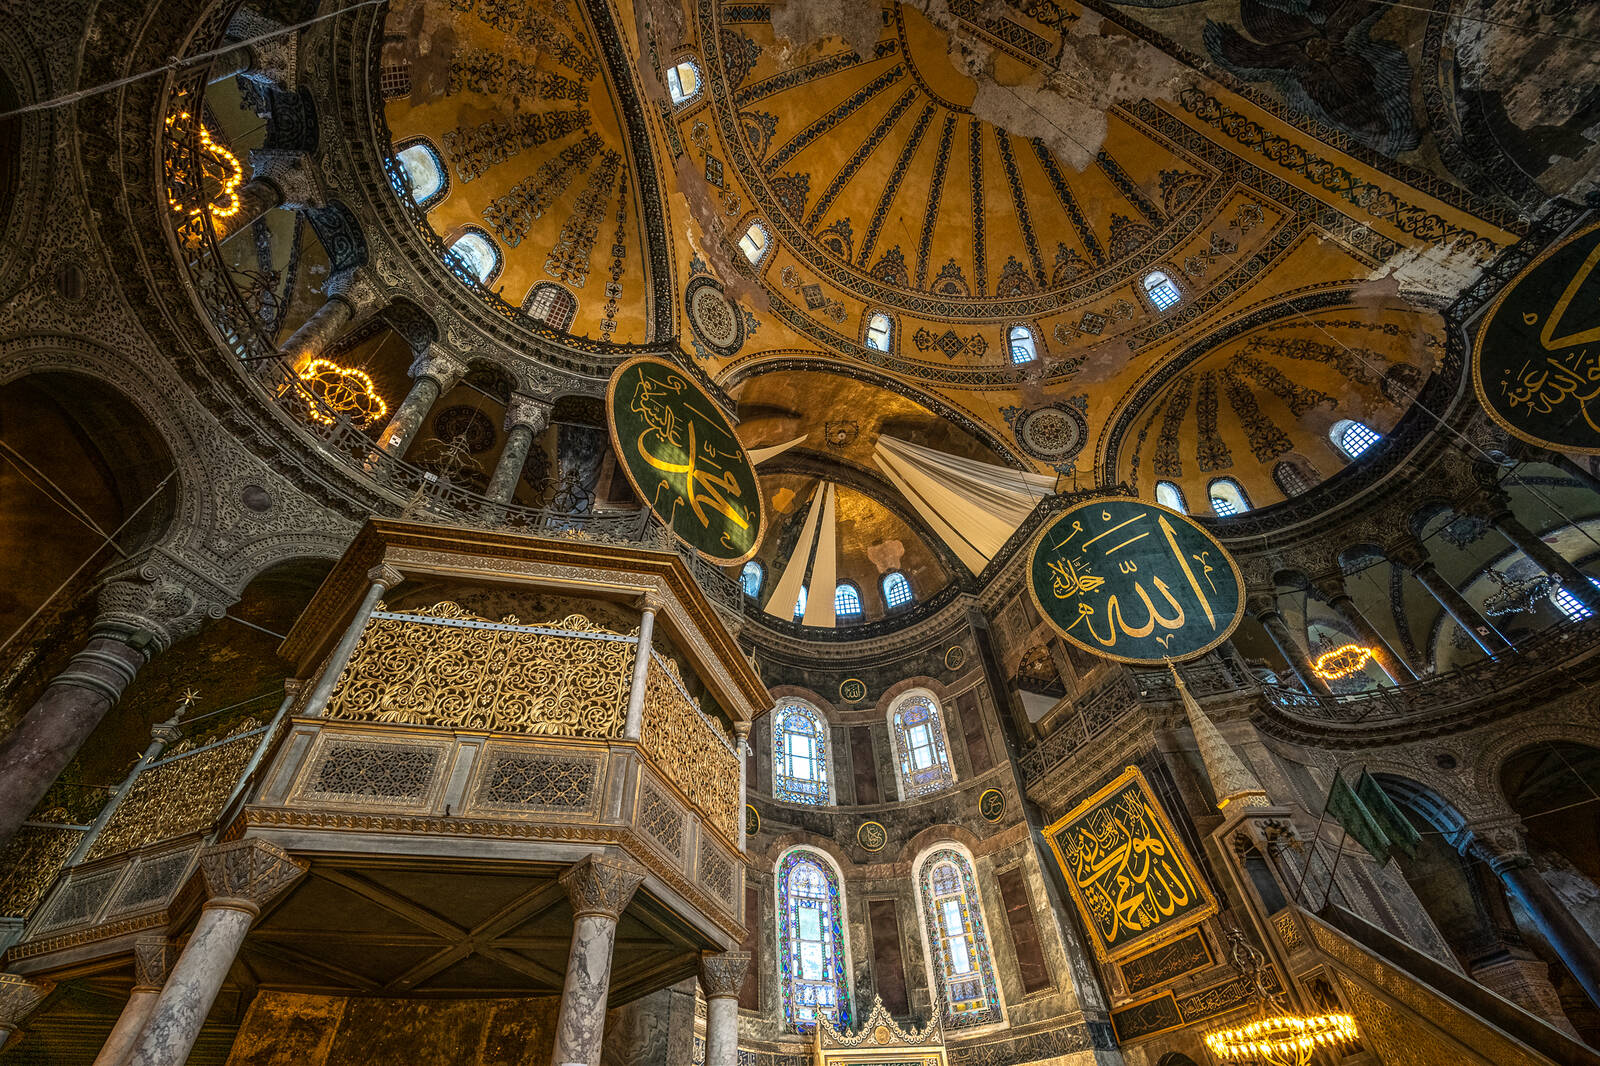 Image of Hagia Sophia by James Billings.